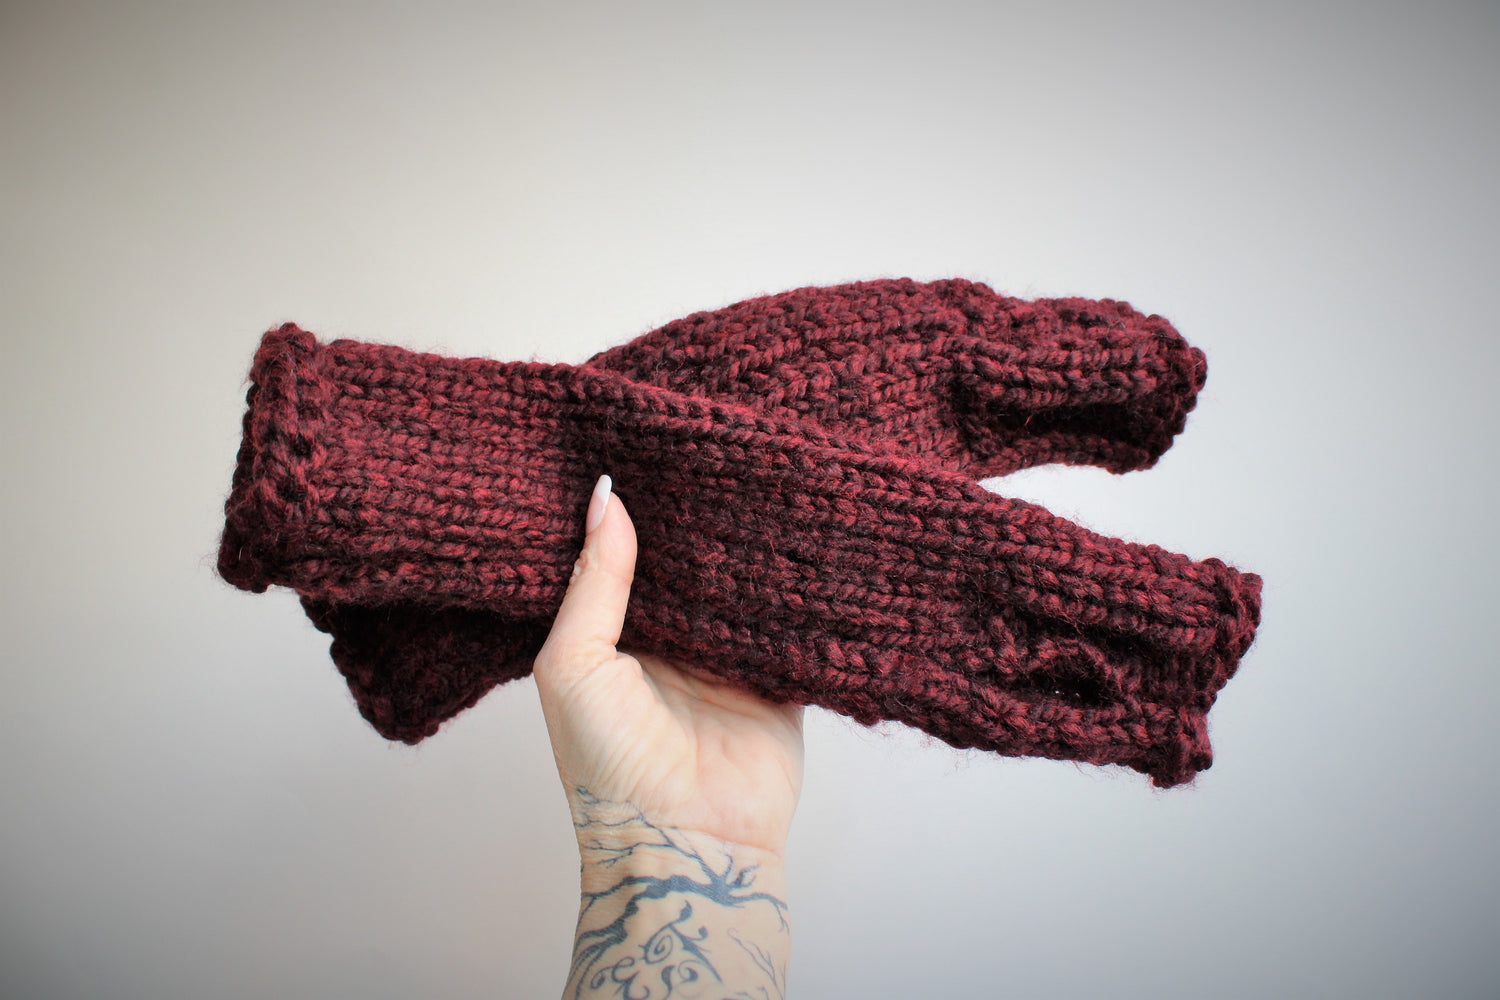 The "Garnet" Handknit Fingerless Gloves in Dark Wine Red